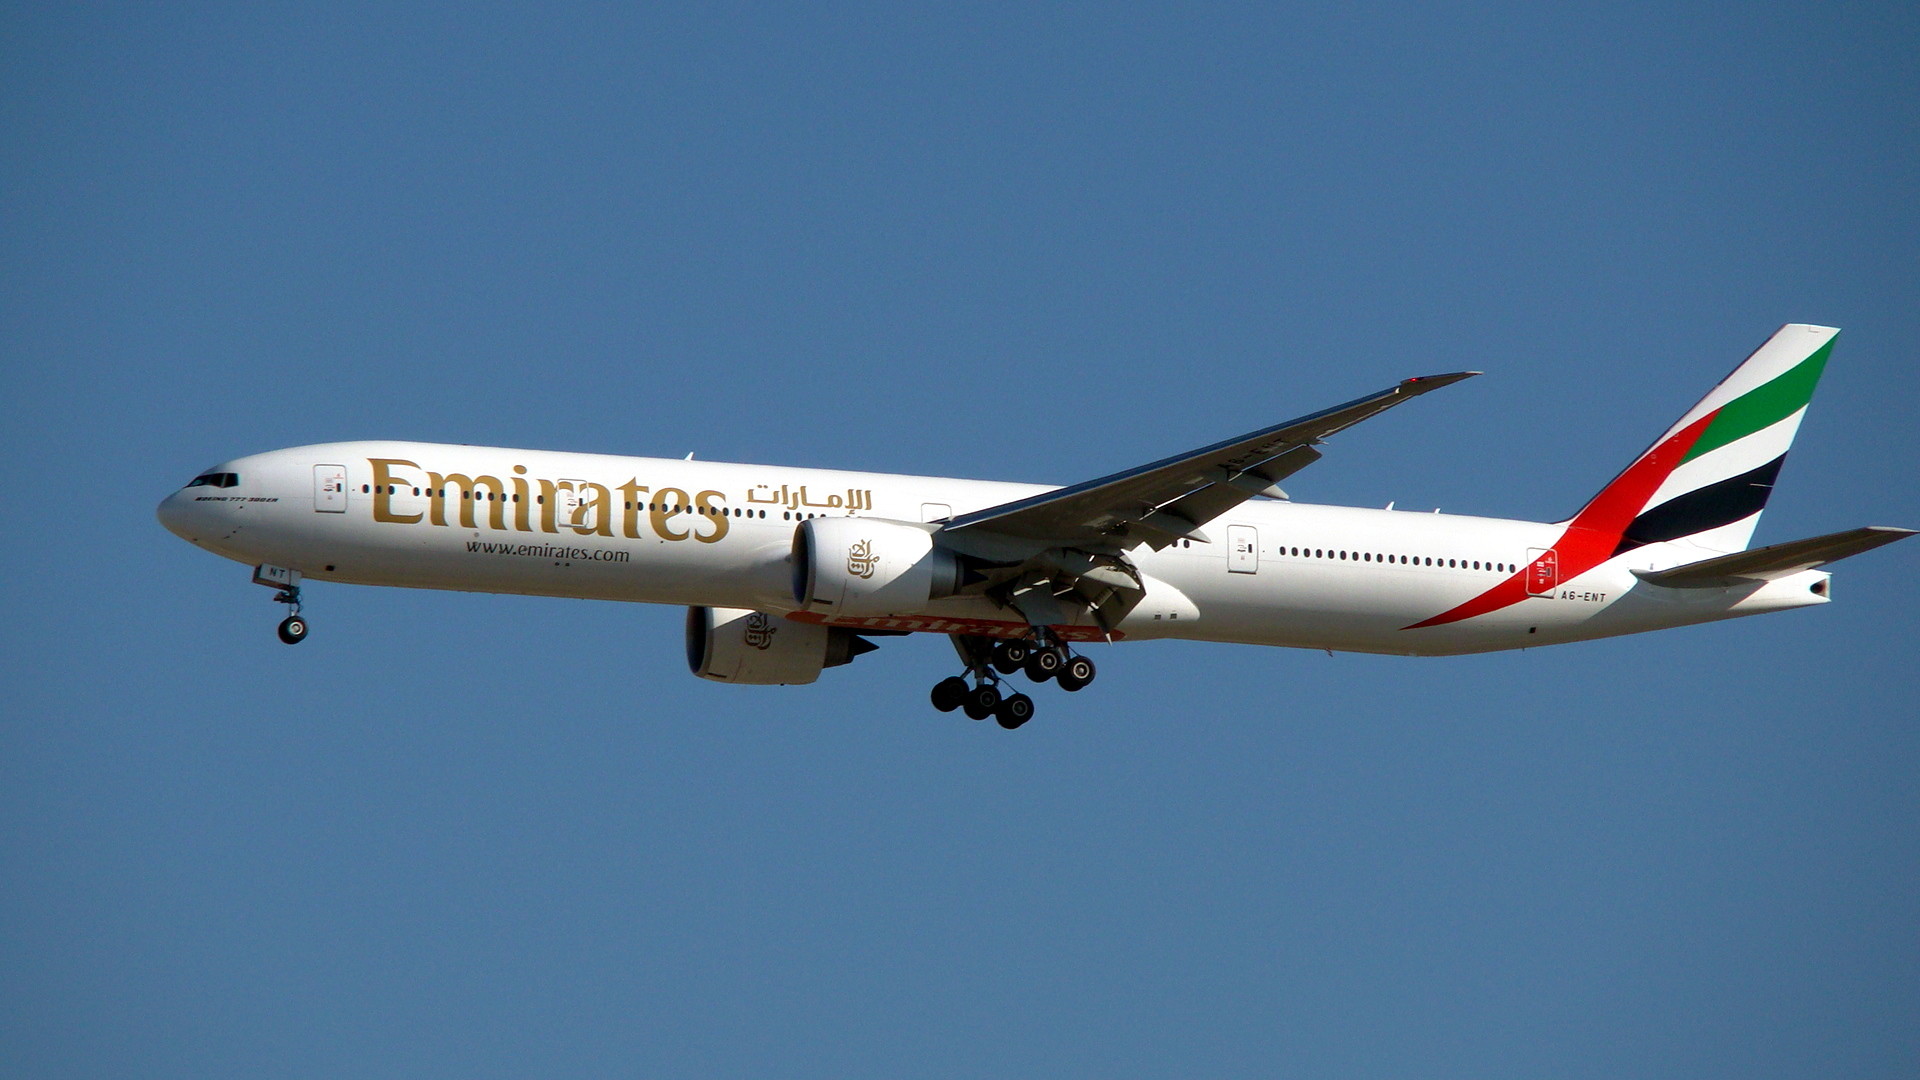 1920x1080 File:Boeing 777-300ER (A6-ENT) de Emirates.JPG